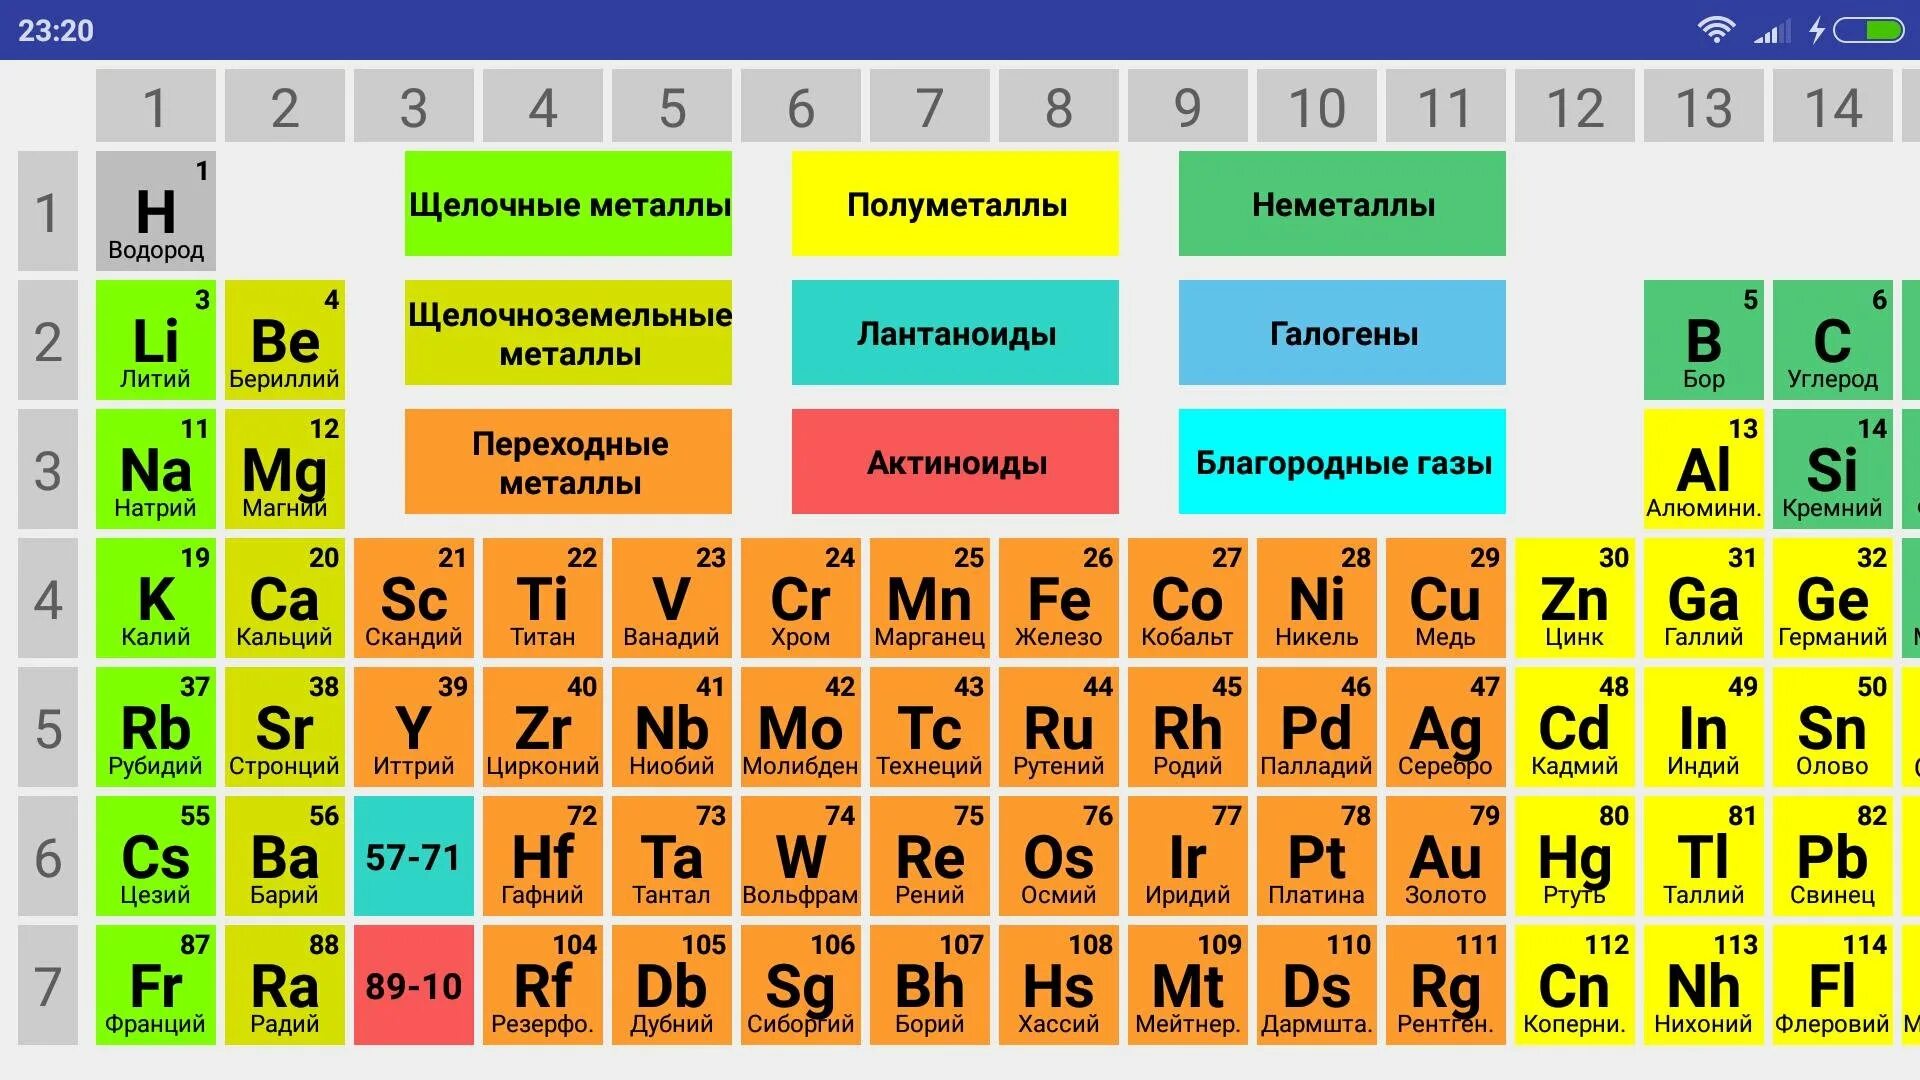 Группа элемента h. Таблица Менделеева галогены инертные ГАЗЫ. Химическая таблица Менделеева металлы и неметаллы. Щелочные и щелочноземельные металлы в таблице Менделеева. Периодическая таблица системы металлов неметаллов.